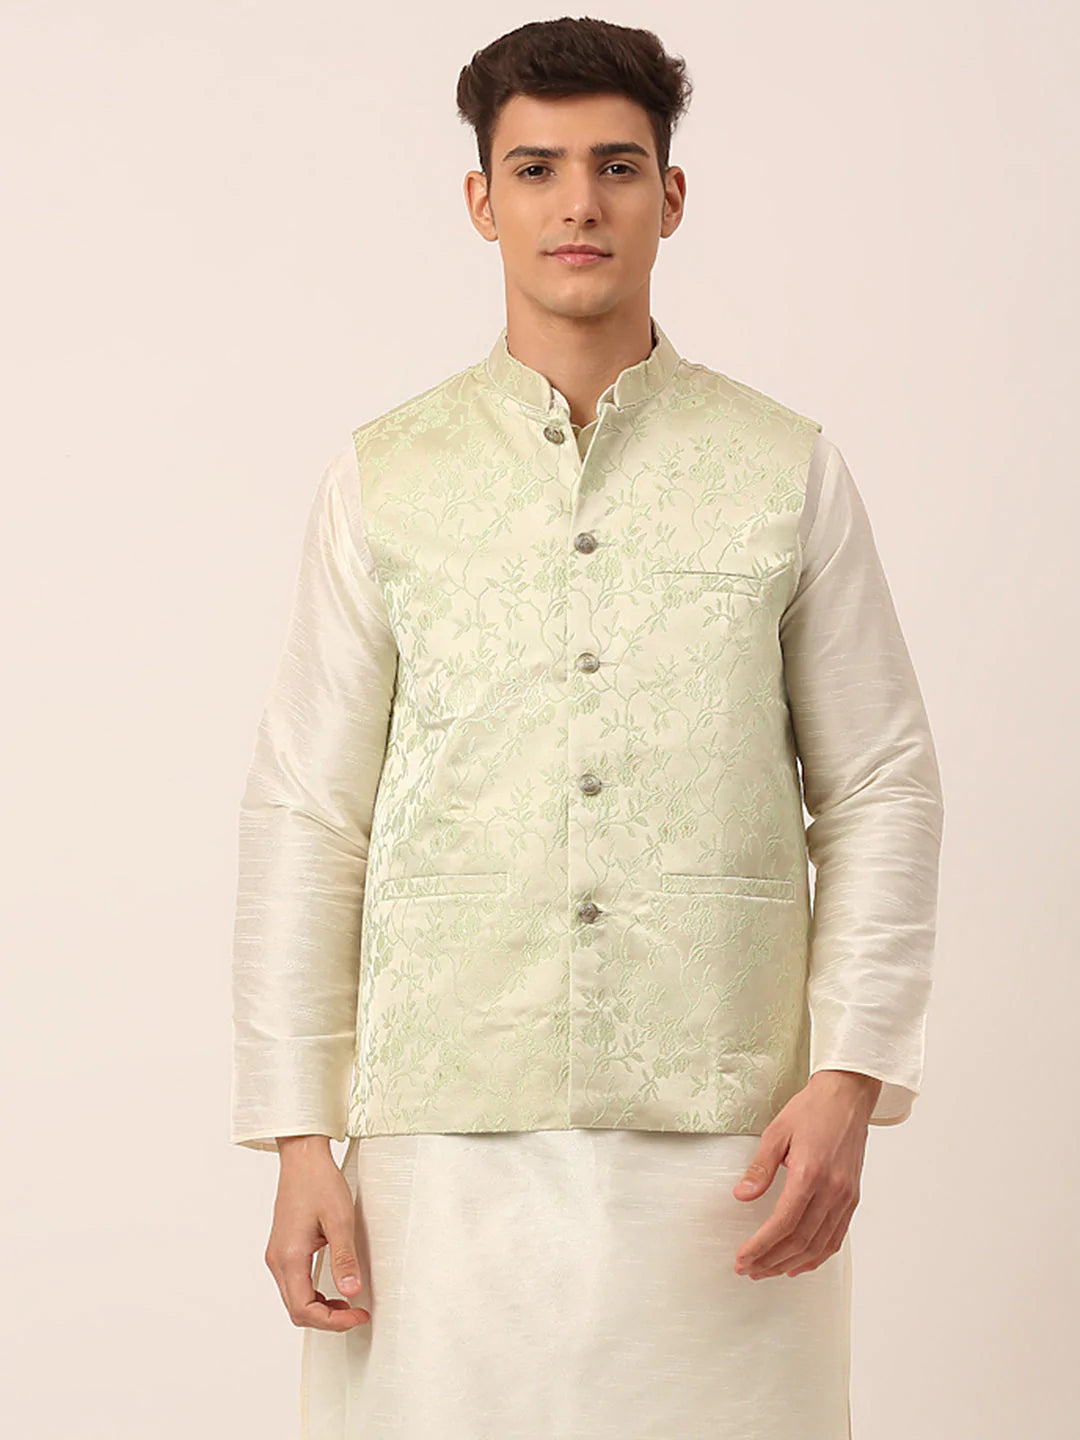 Men's Pista Green Floral Design Nehru Jacket.( JOWC 4035 Pista )